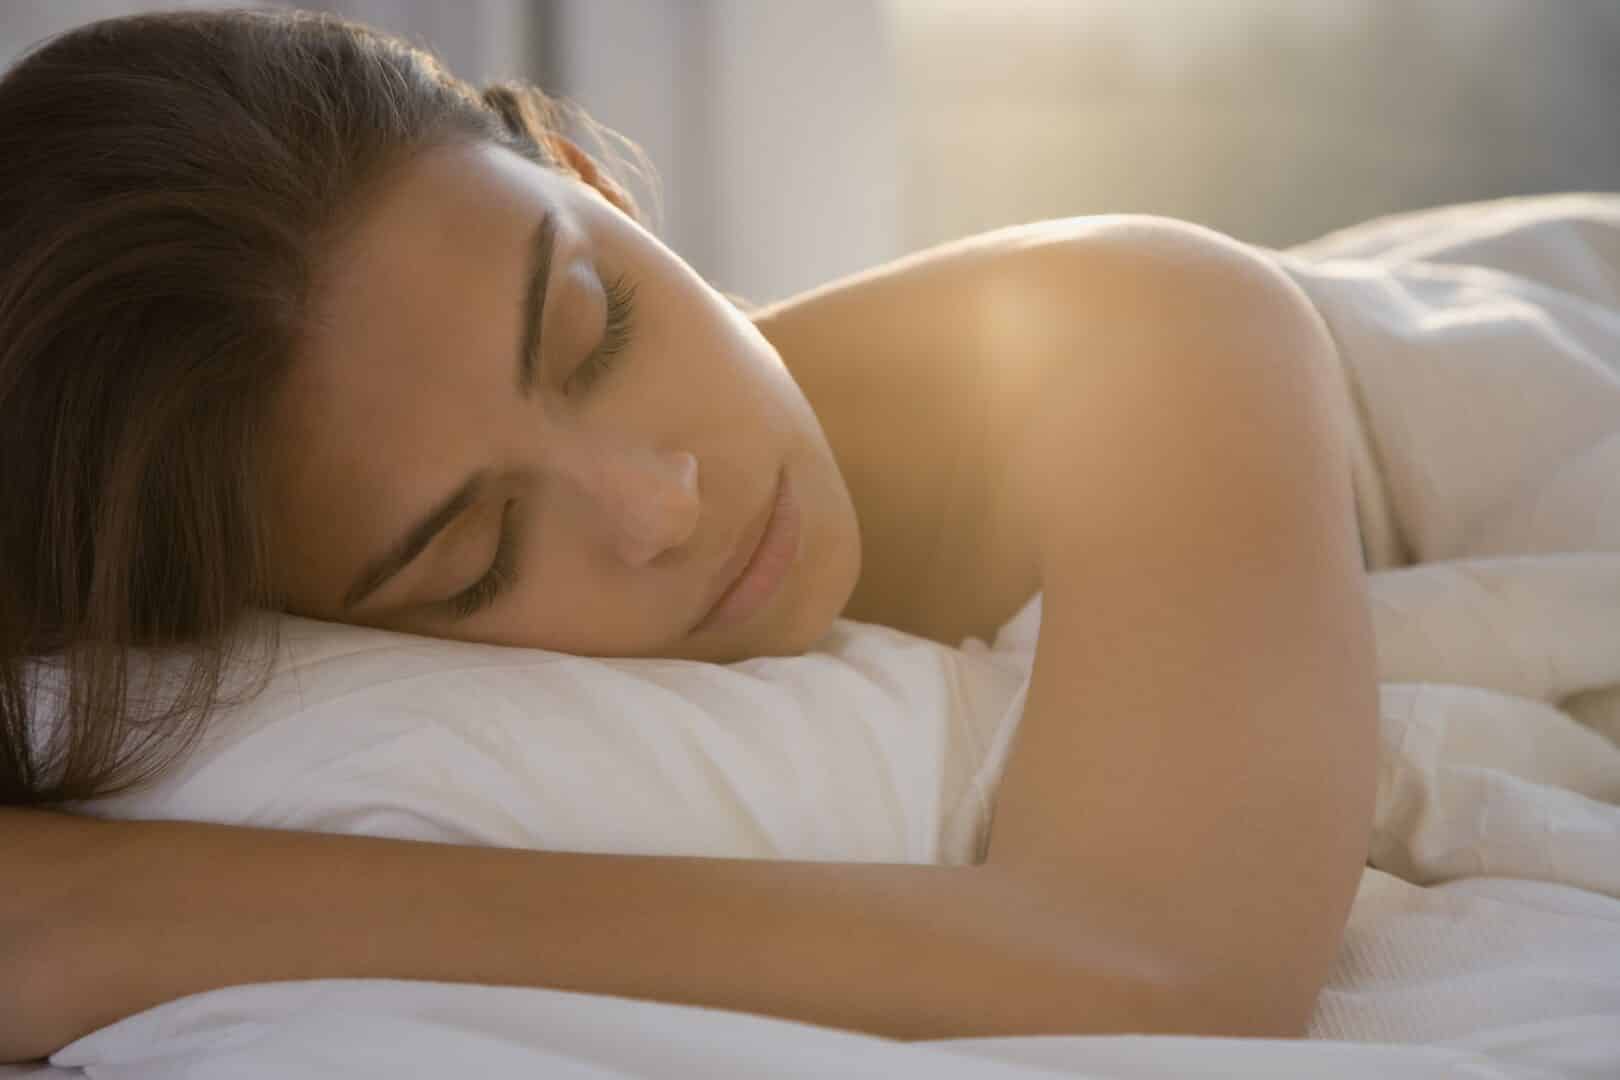 Dormir pouco - Quais os problemas causados pela falta de sono?